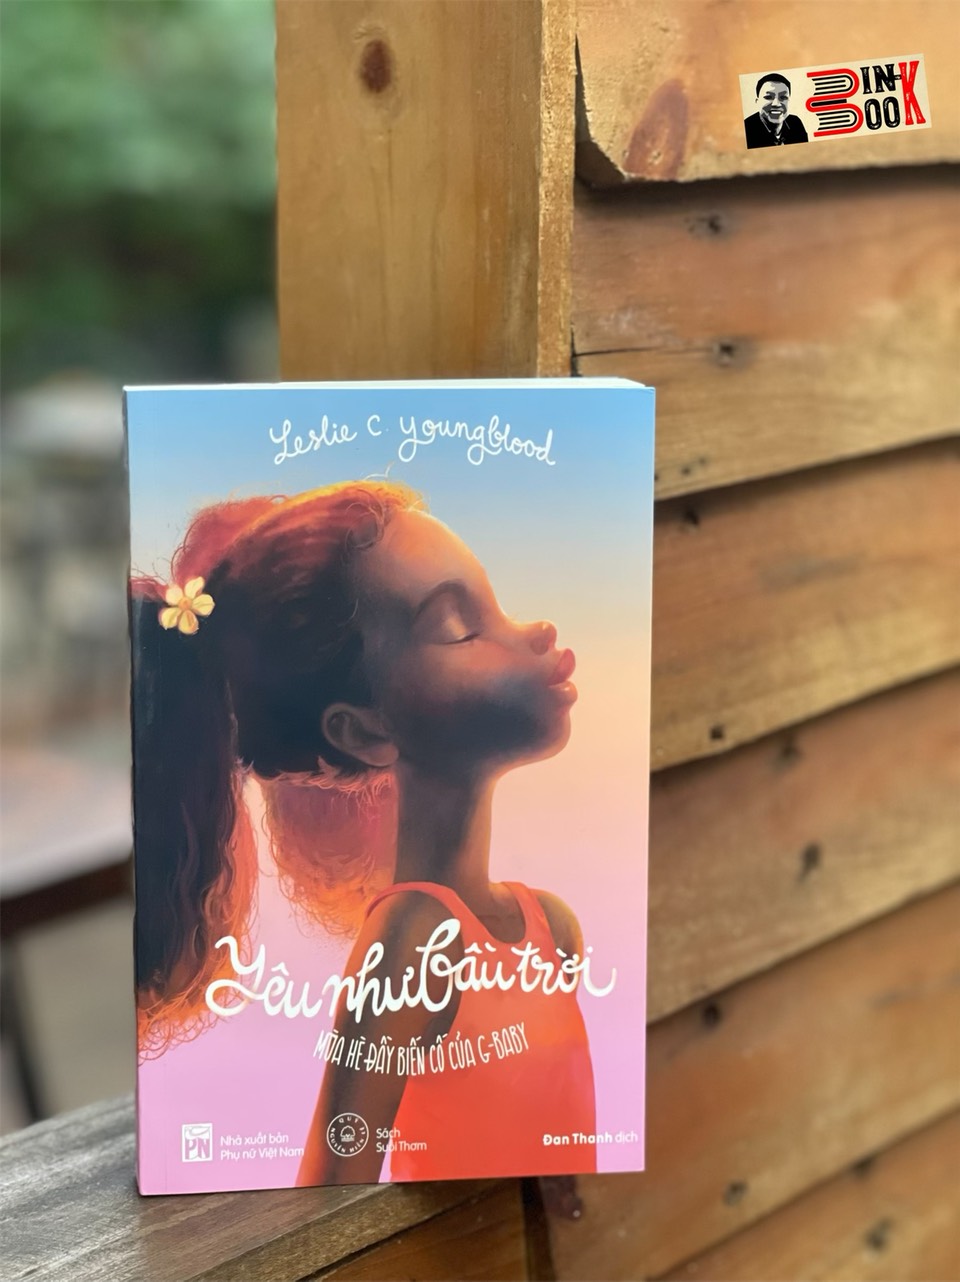 YÊU NHƯ BẦU TRỜI – Mùa hè đầy biến cố của G-baby - Leslie C. Youngblood - Dịch giả Đan Thanh - Nxb Phụ Nữ - bìa mềm